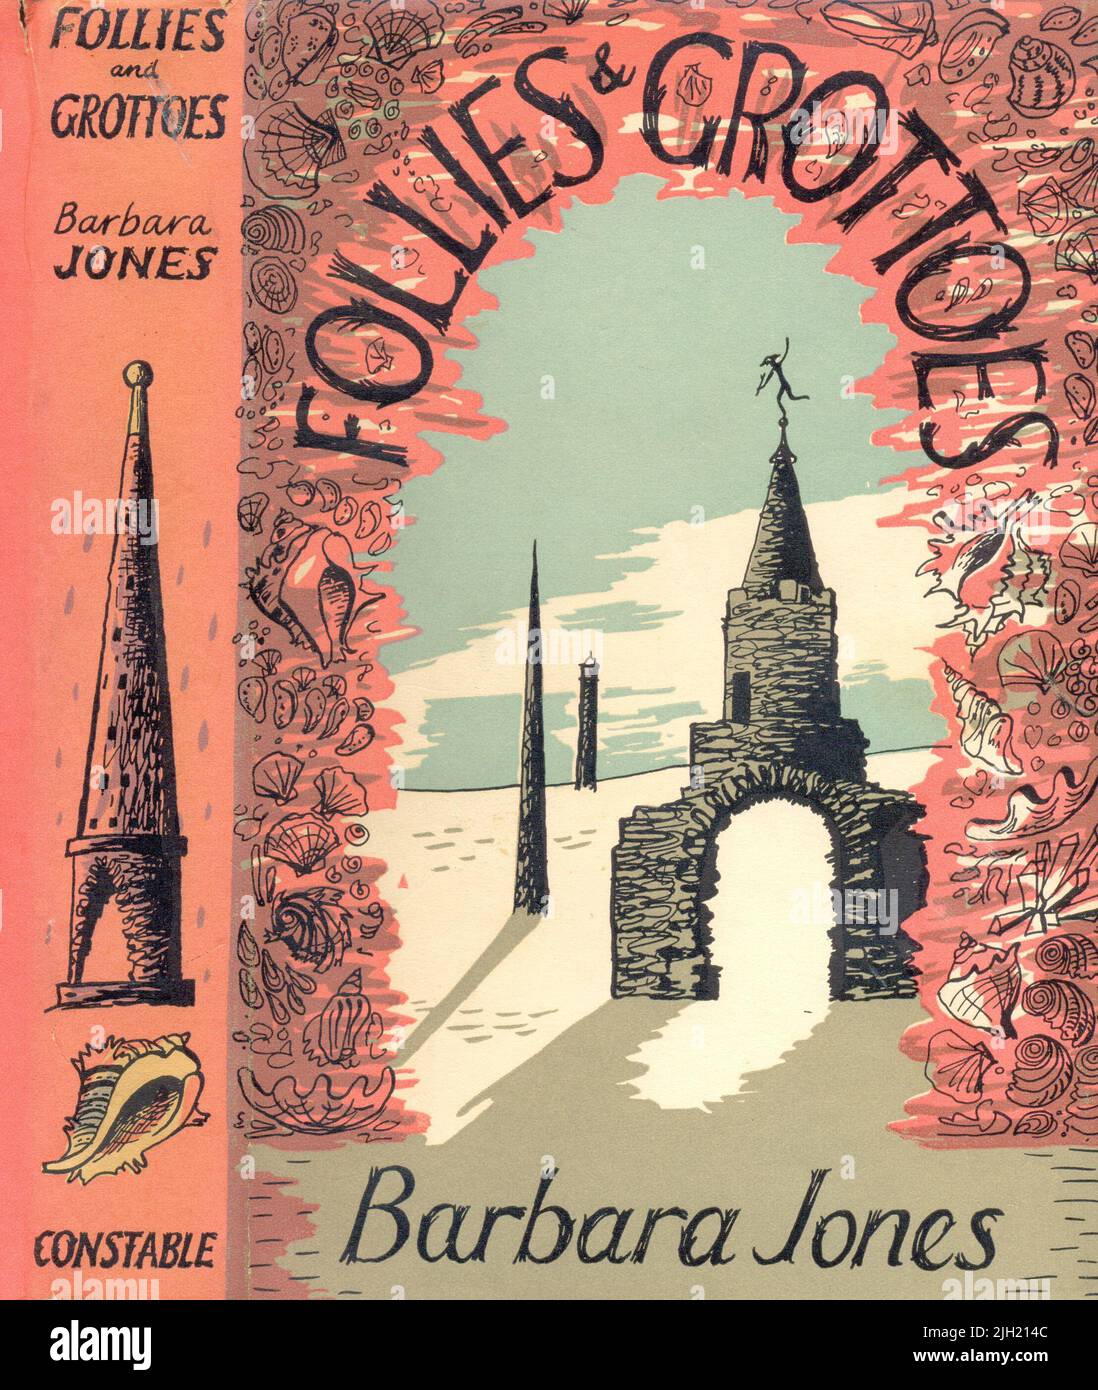 Schutzumschlag von Barbara jones für Follies & Grottos von Barbara Jones 1953 Stockfoto